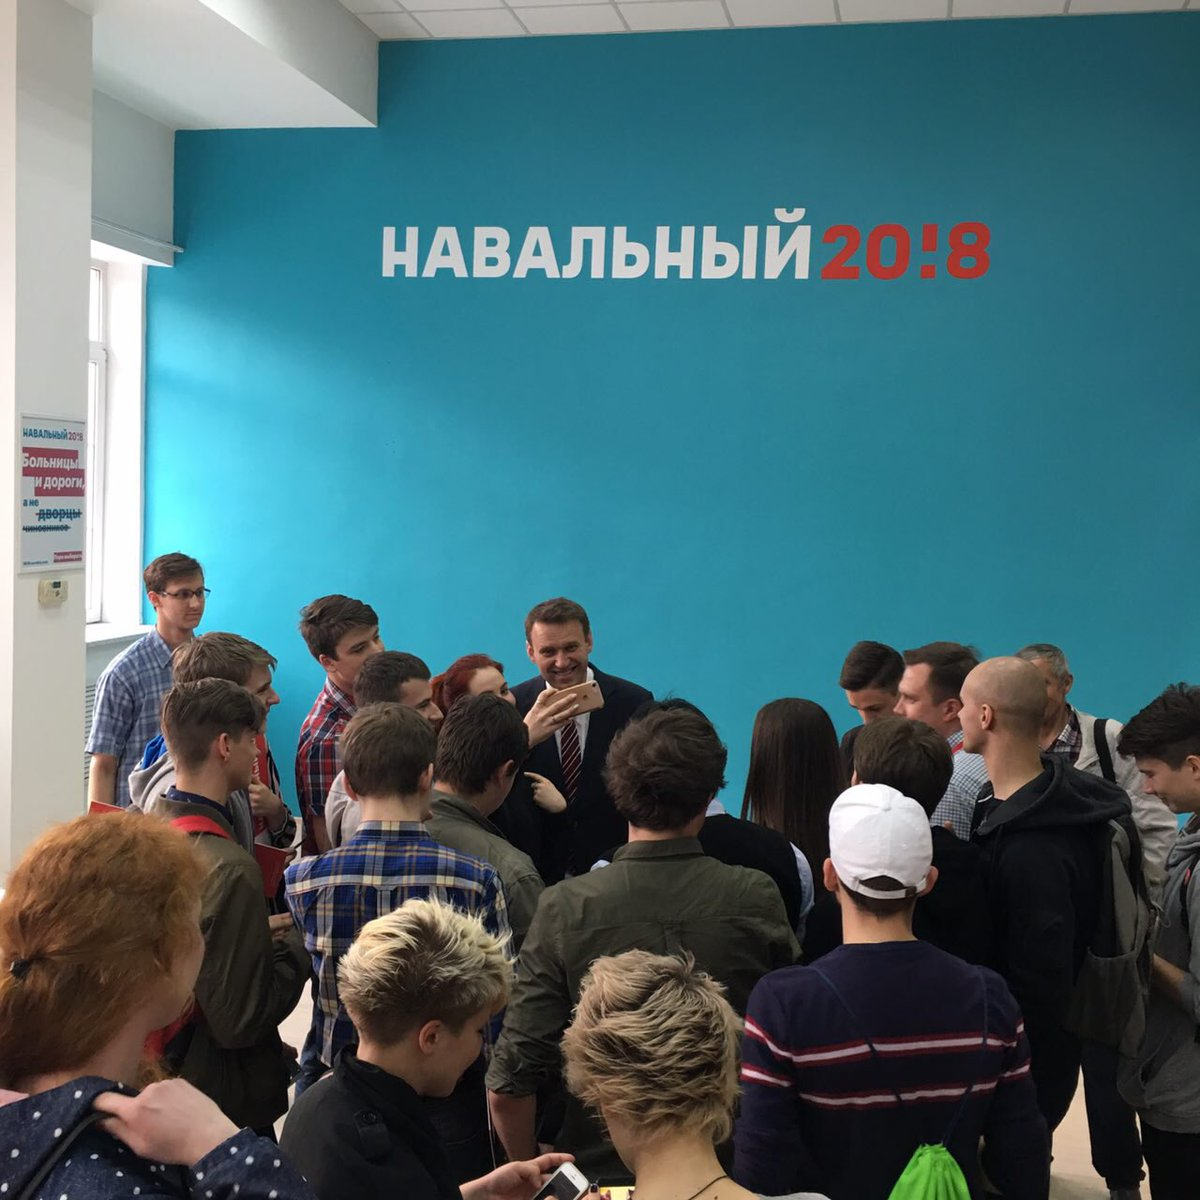 В Кирове перенесли дату открытия штаба Навального